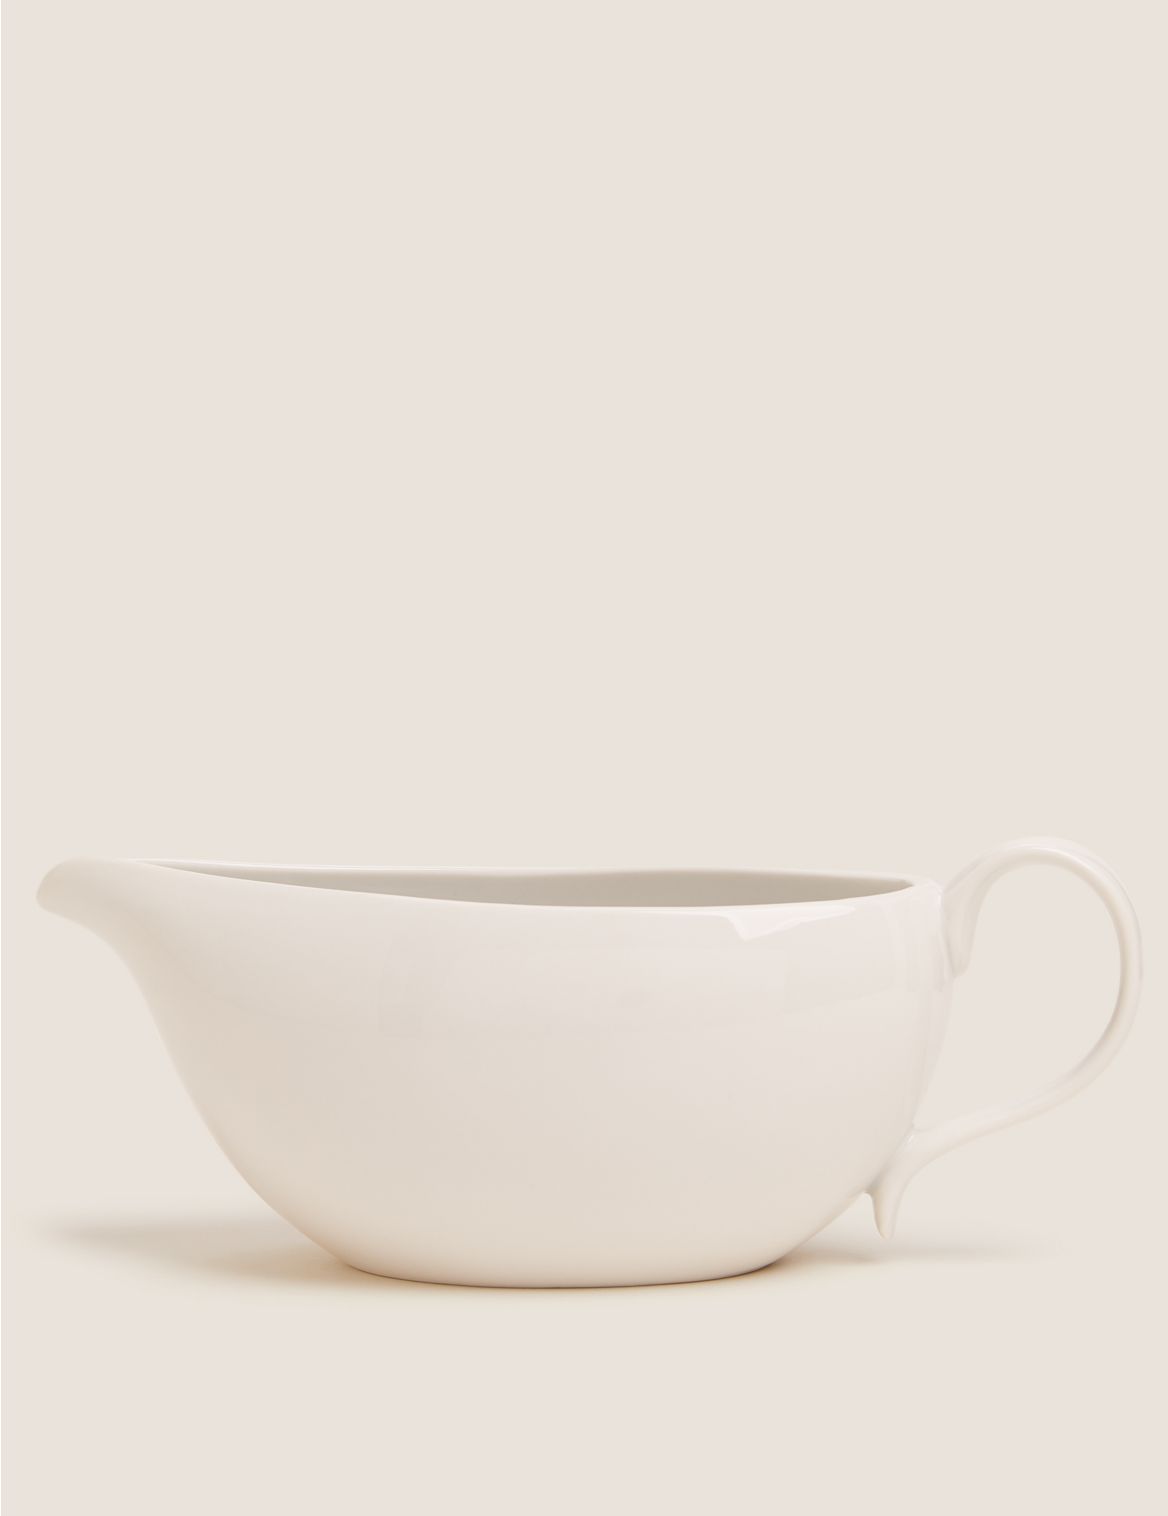 Image of Porcelain StayNew&trade; Gravy Boat white